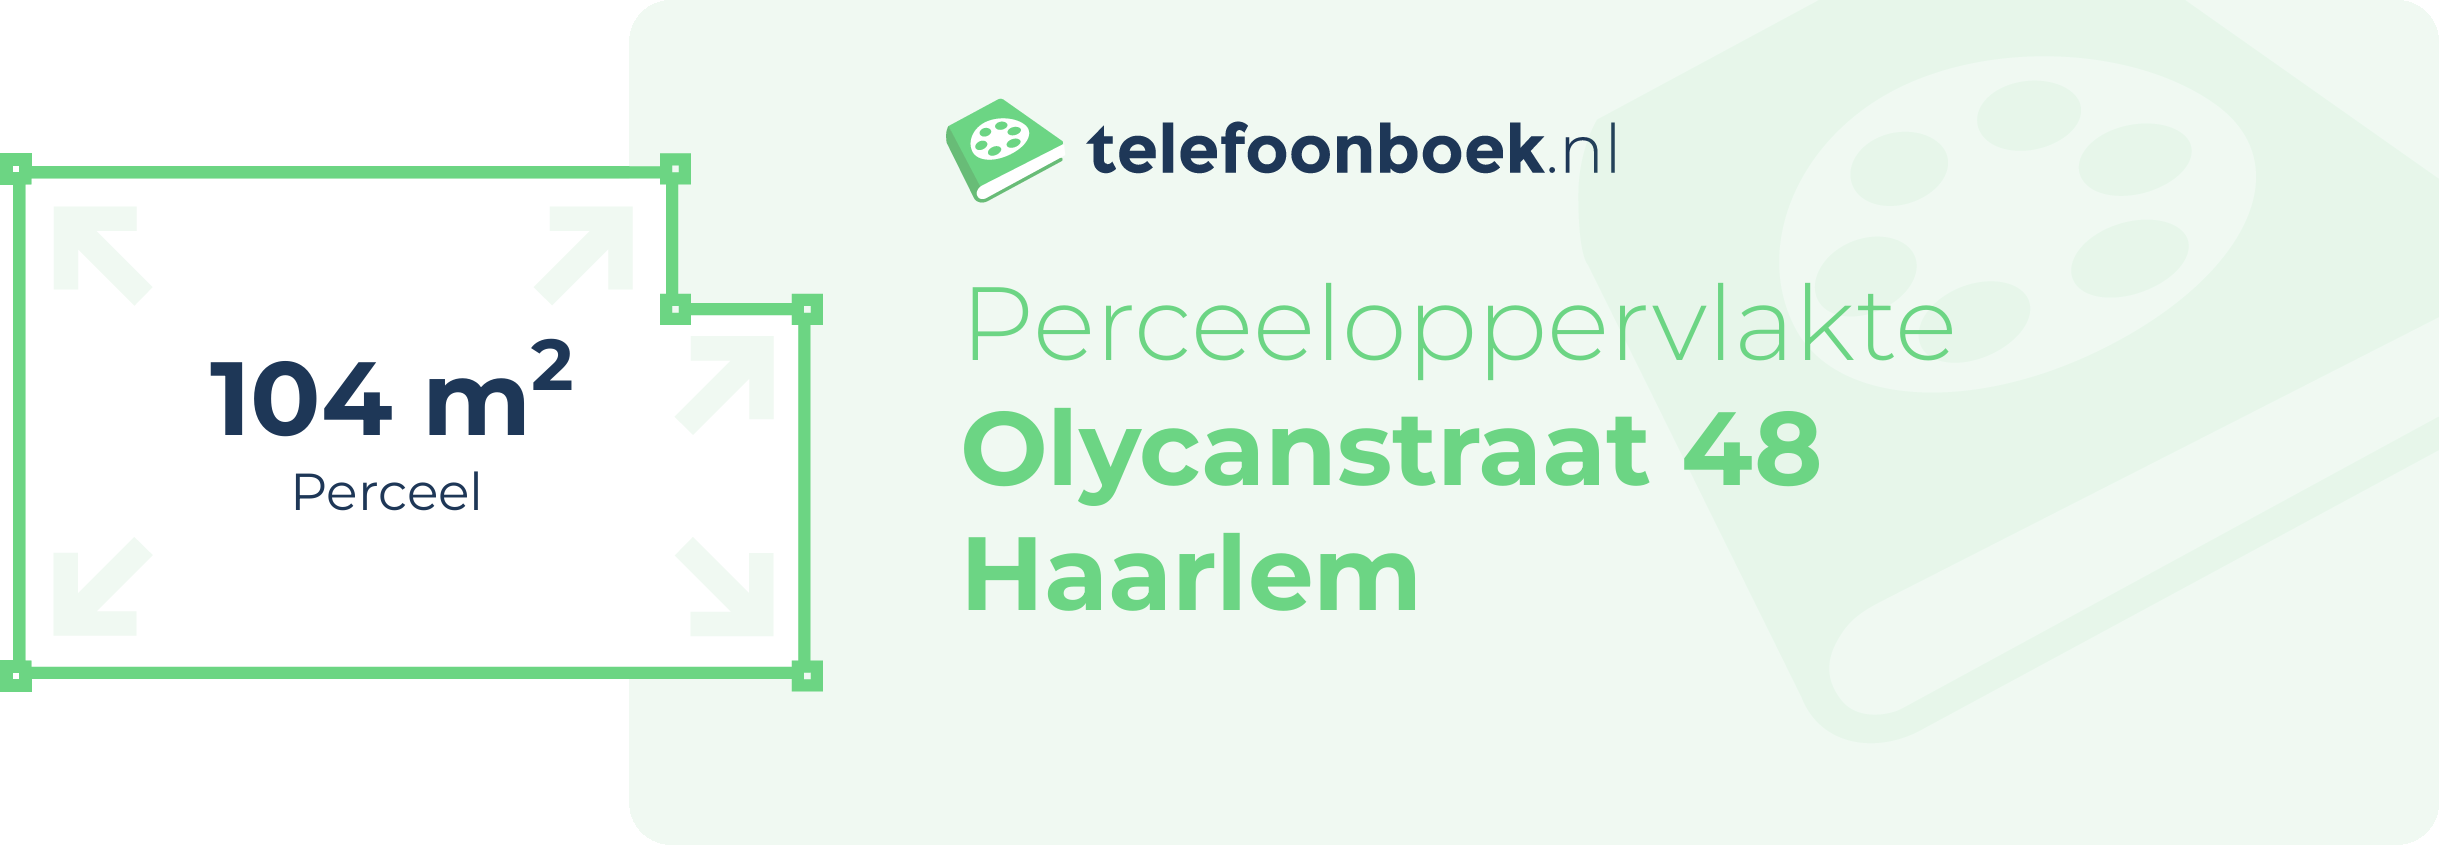 Perceeloppervlakte Olycanstraat 48 Haarlem